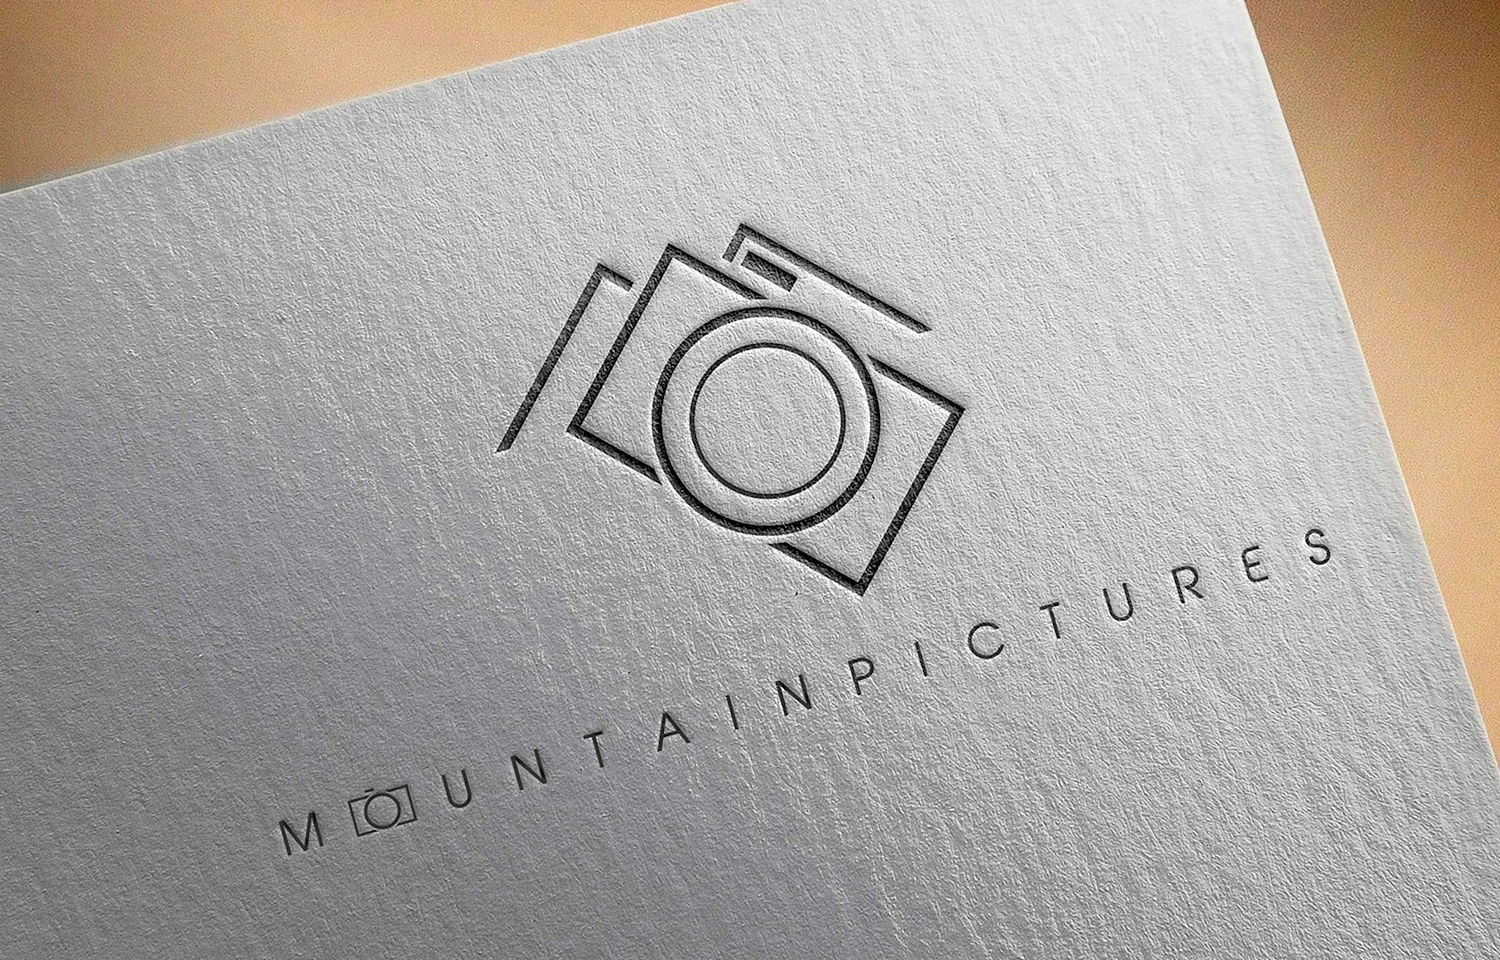 Стильный логотип фотографа